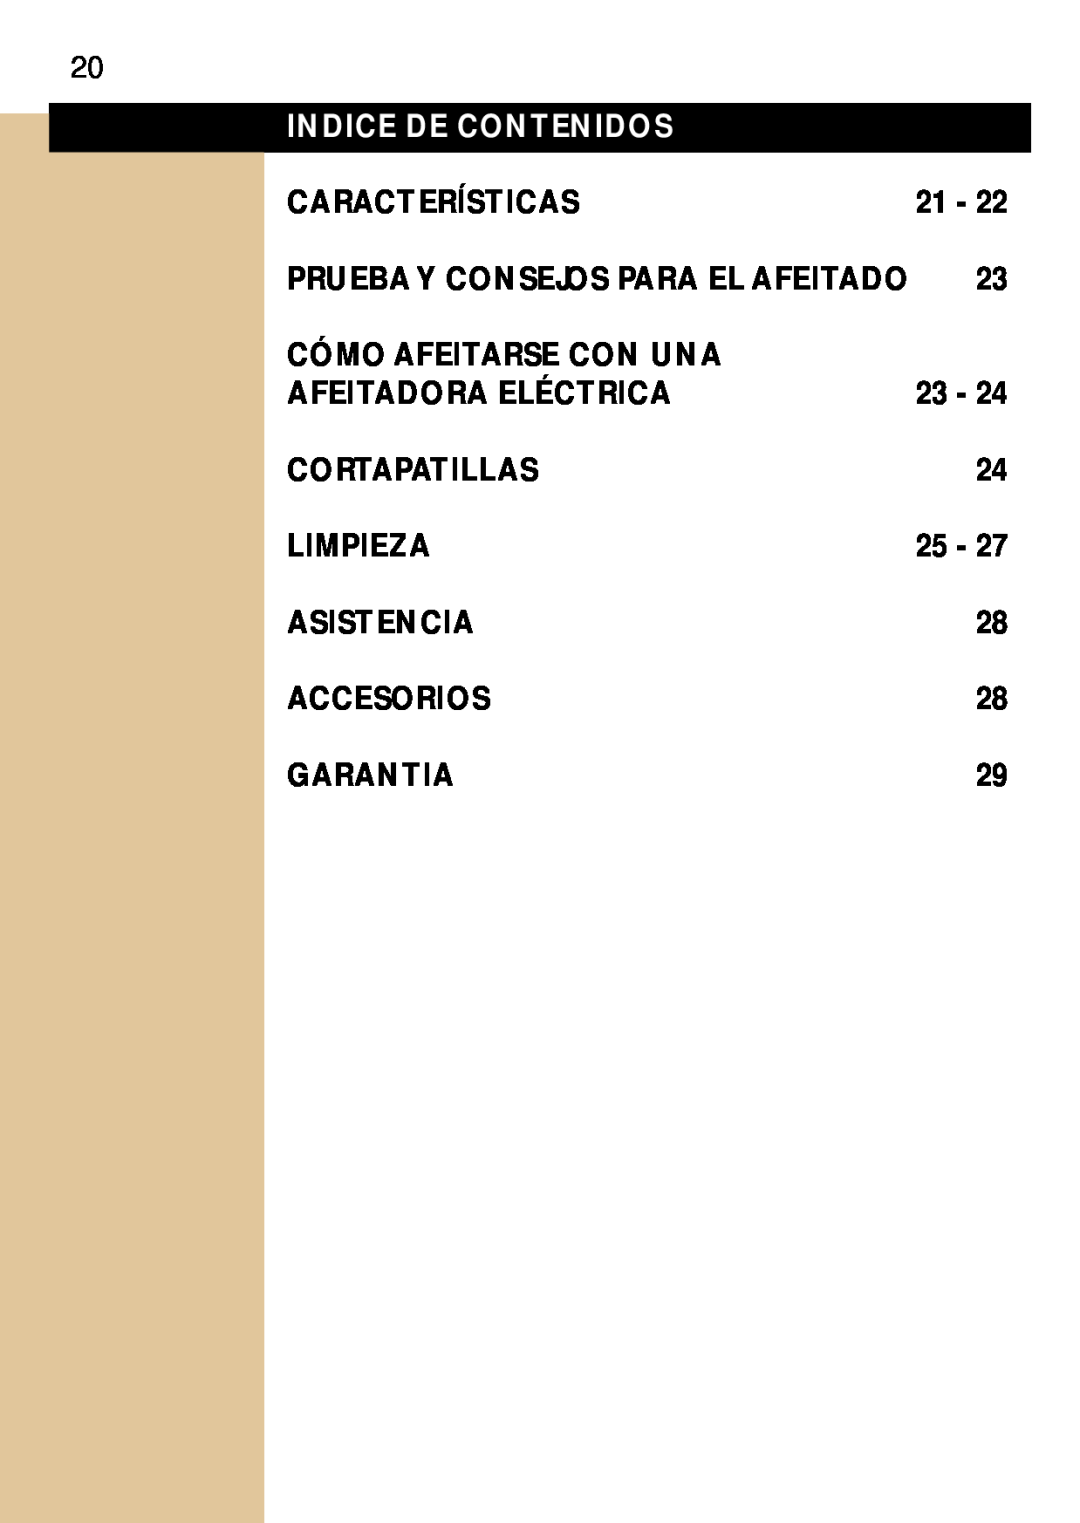 Philips 17LC Indice De Contenidos, Características, Cómo Afeitarse Con Una, Afeitadora Eléctrica, Cortapatillas, Limpieza 